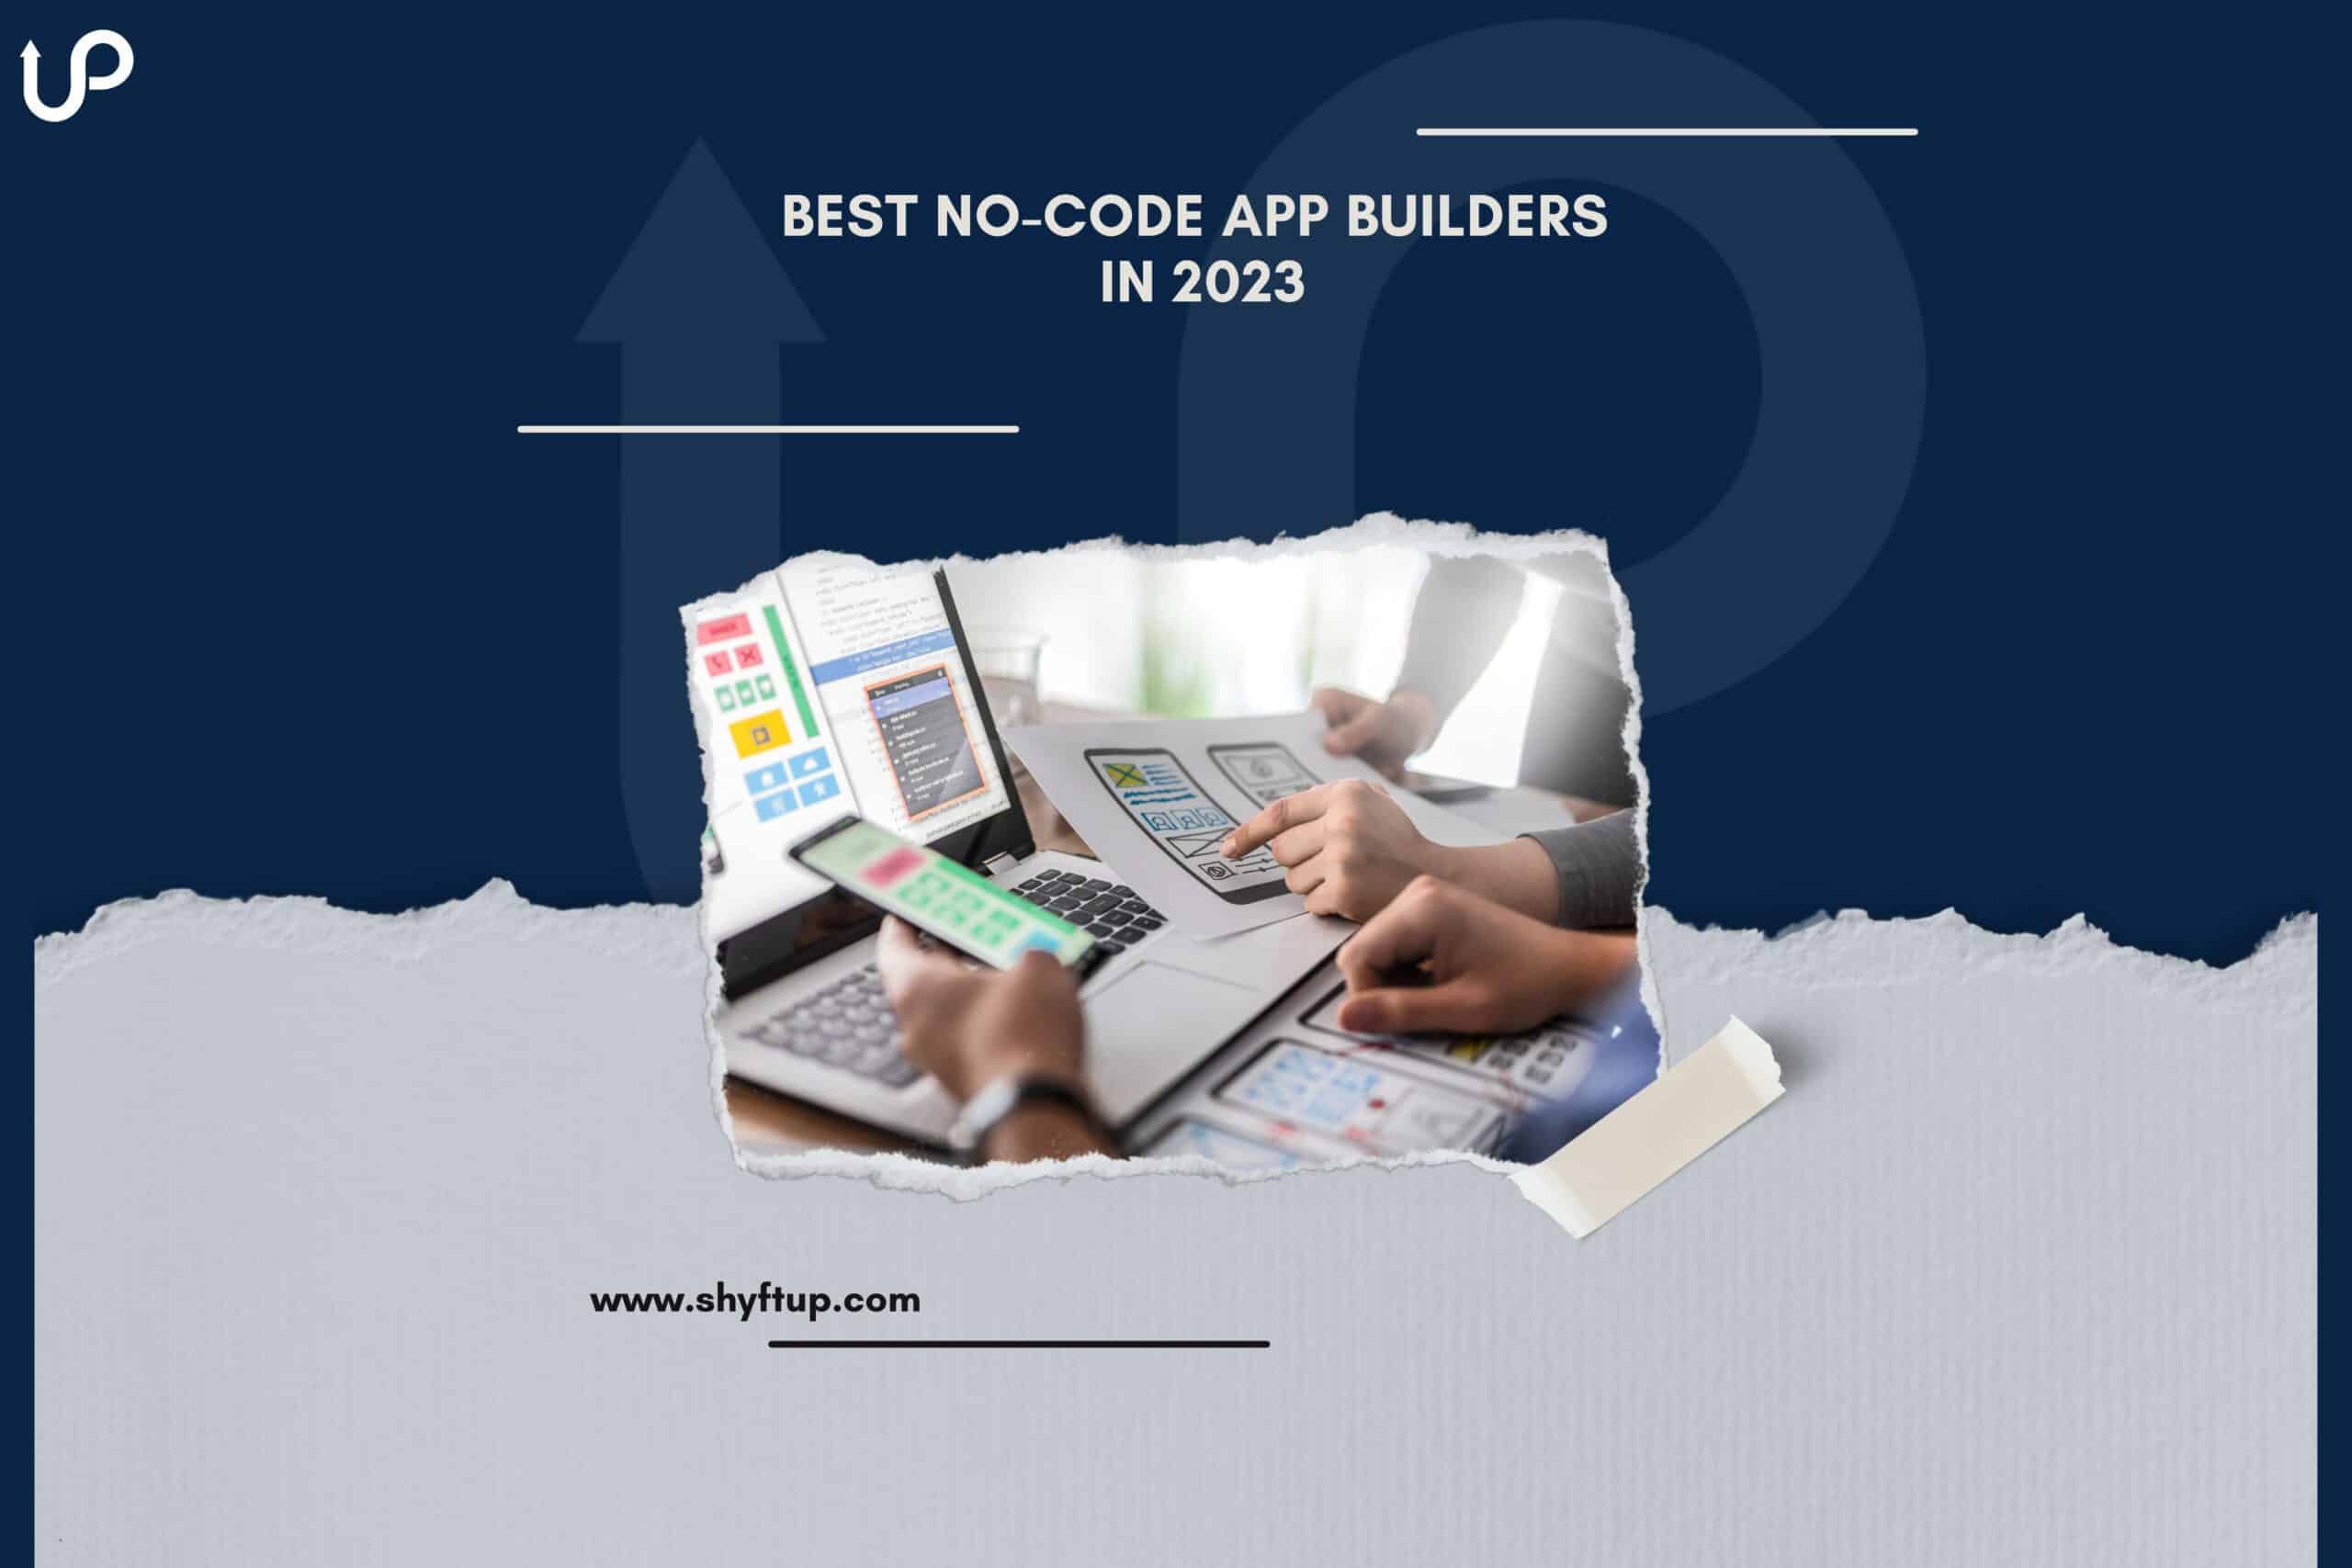 The 8 best no-code app builders in 2023